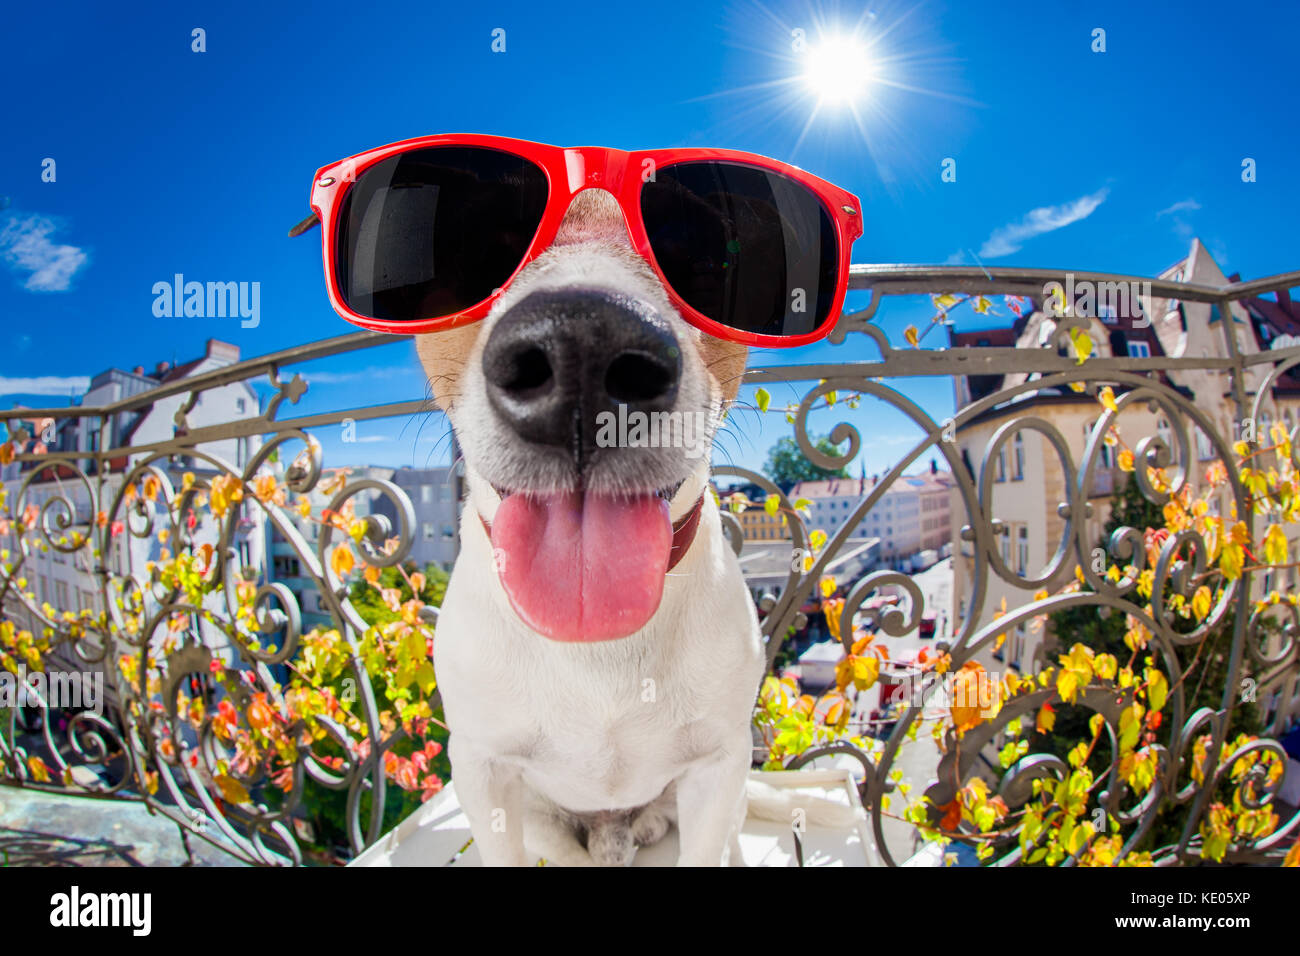 Dumm, dumm, verrückt Jack Russell Hund Portrait in Nahaufnahme fisheye  Objektiv zu schauen auf dem Balkon im Sommer Urlaub Ferien, die Zunge  Stockfotografie - Alamy